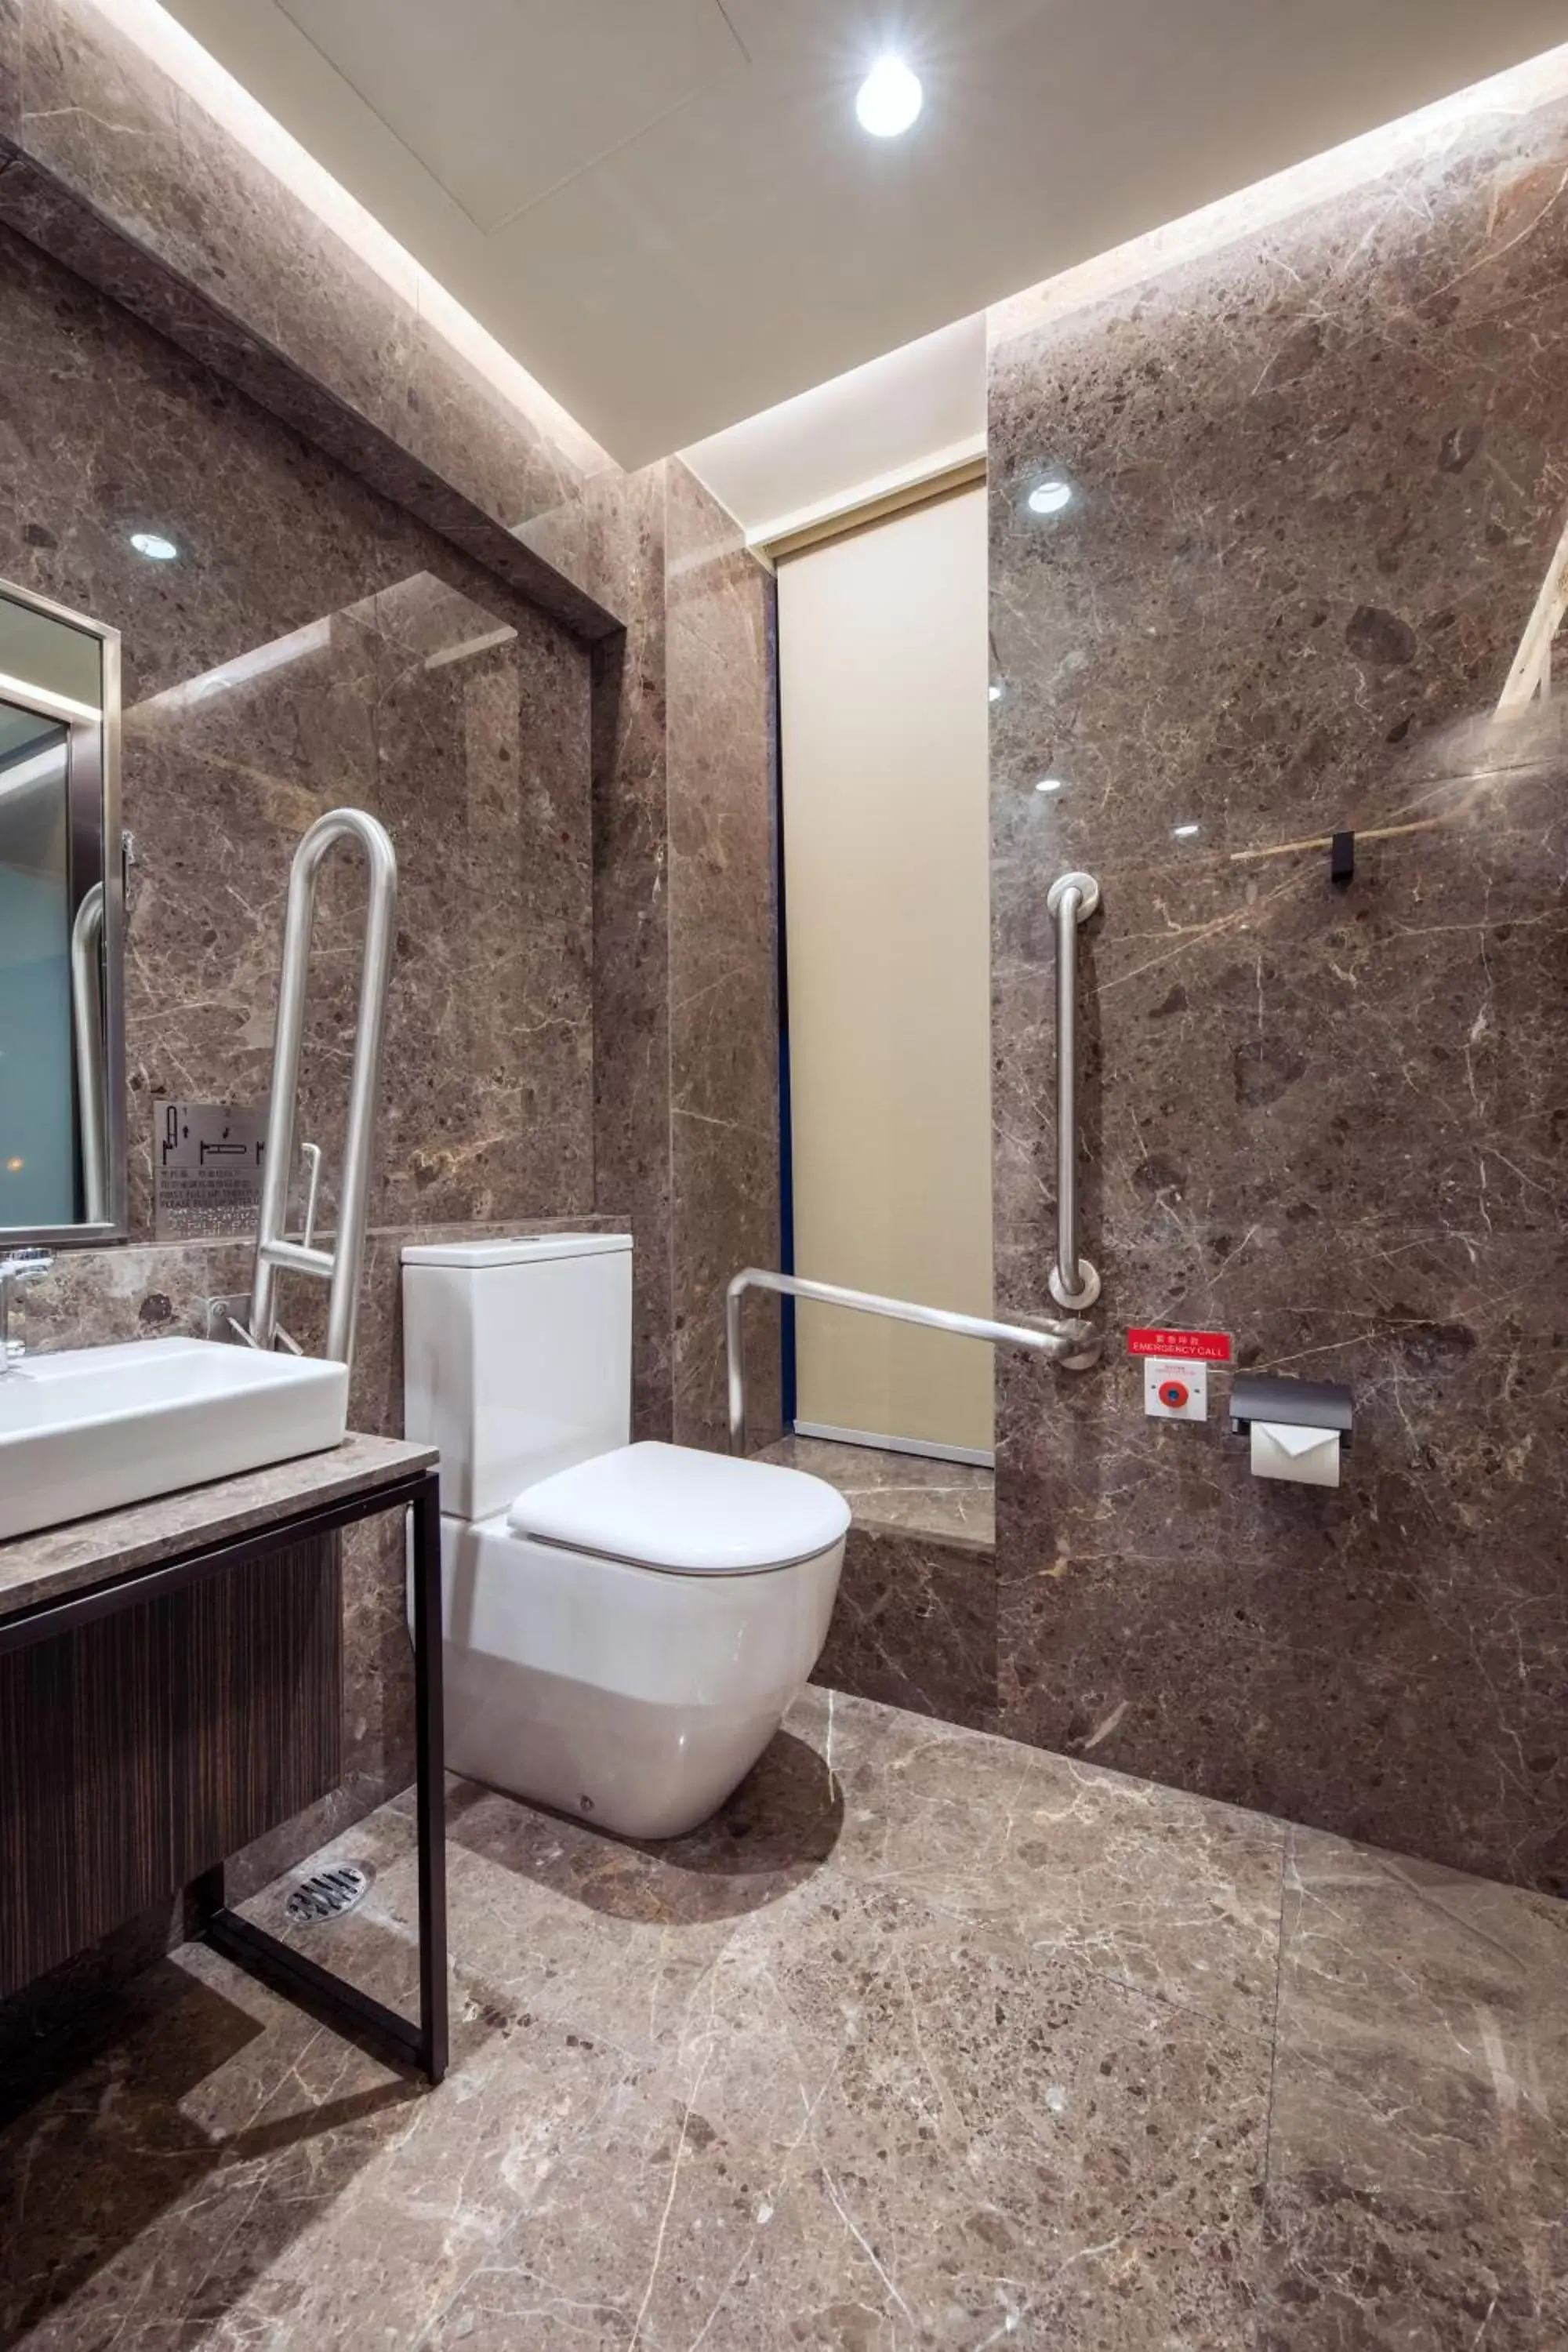 Bathroom in AKVO Hotel